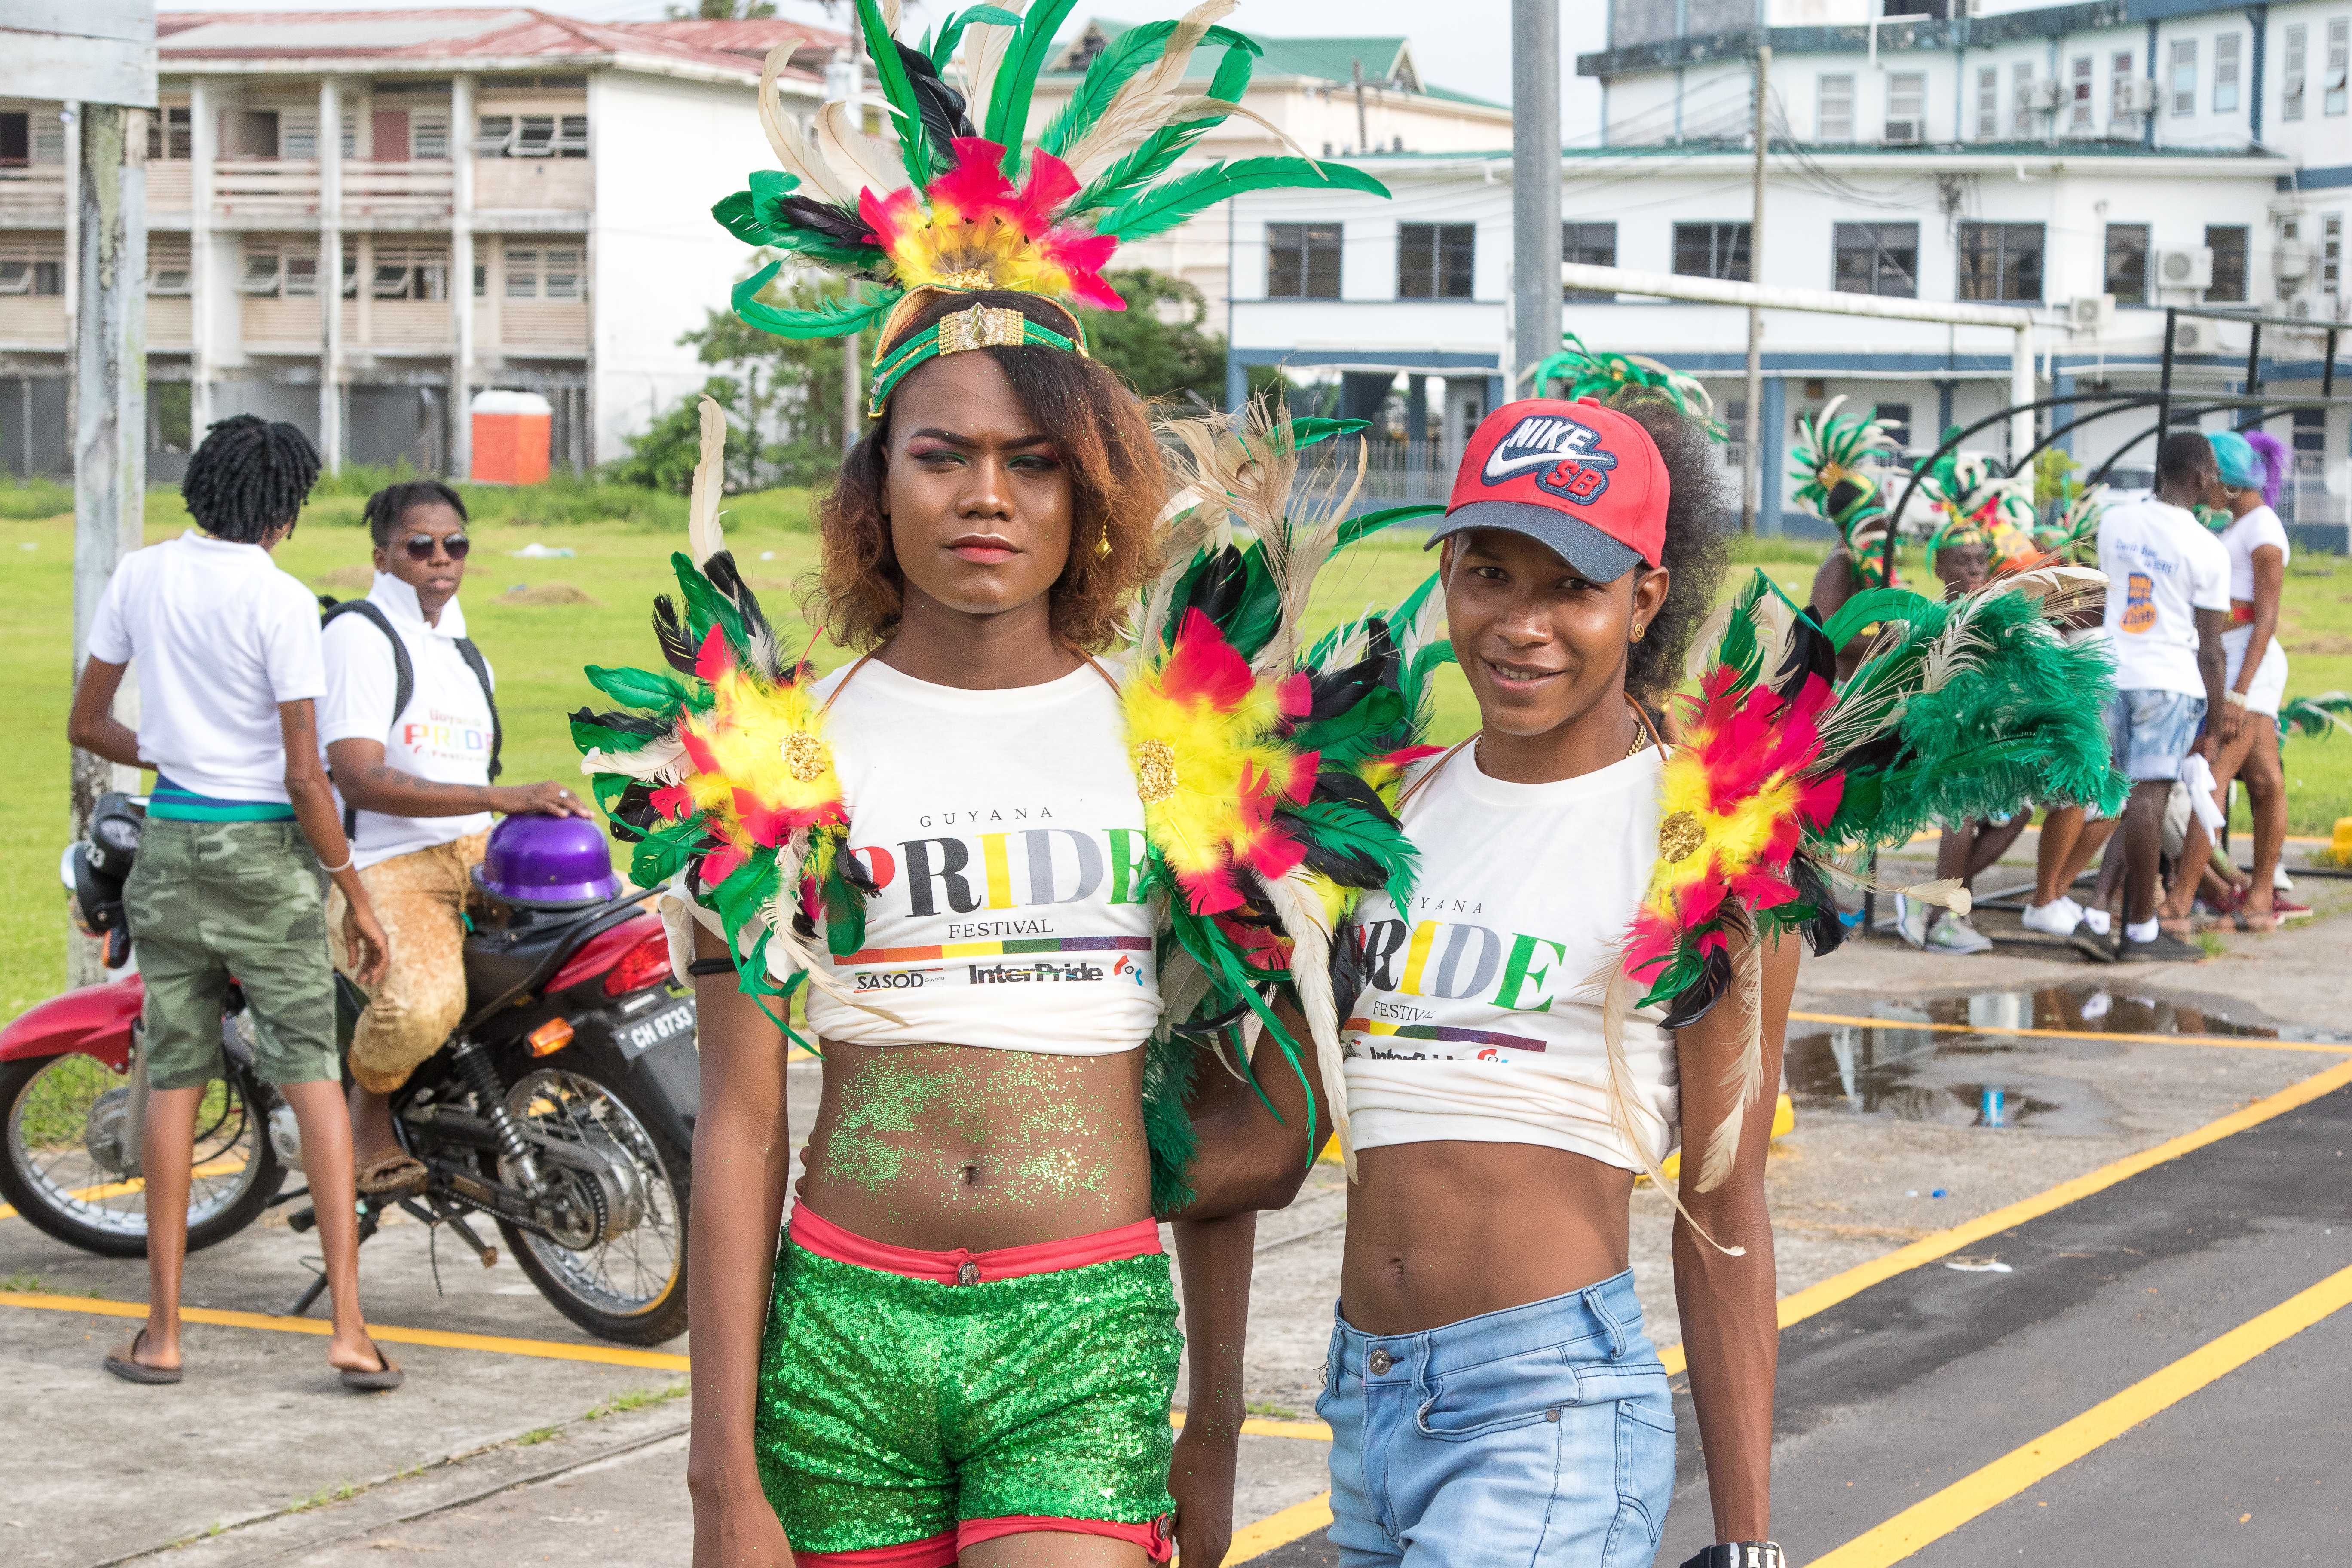  Georgetown, Guyana hookers